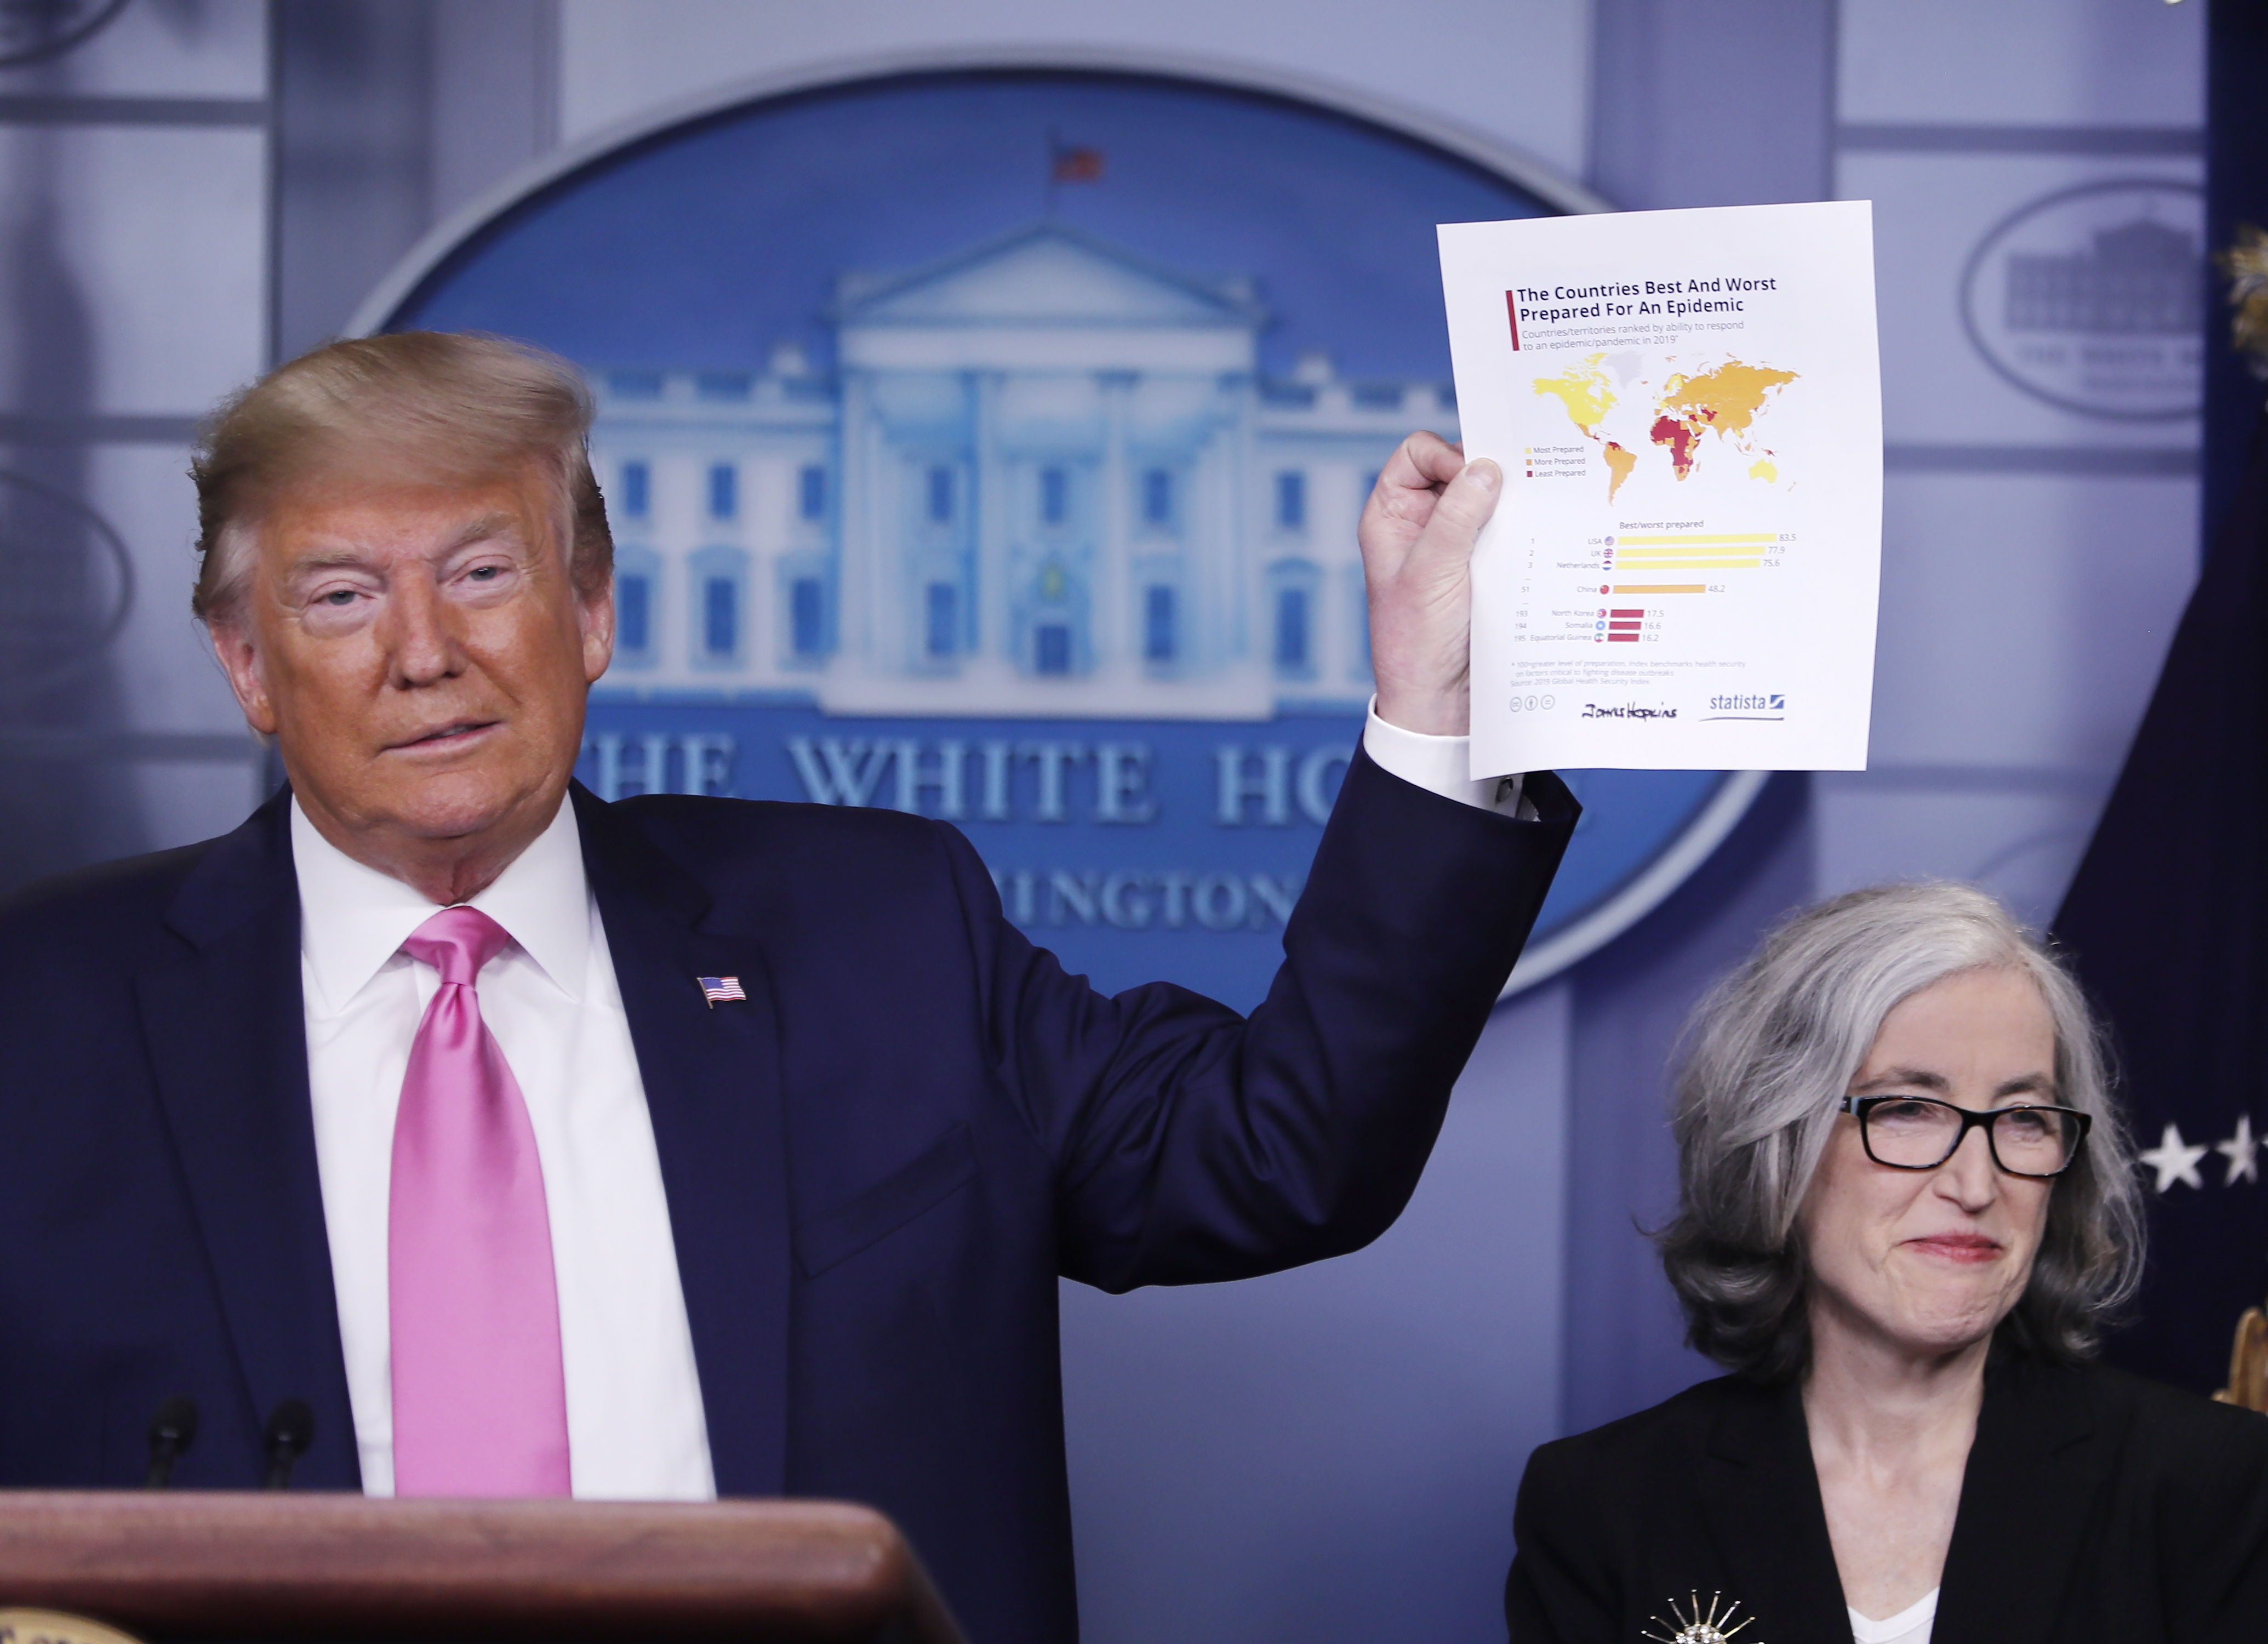 El presidente Donald Trump muestra el mapa de los países mejor preparados para enfrentar el coronavirus. (Foto Prensa Libre: EFE).